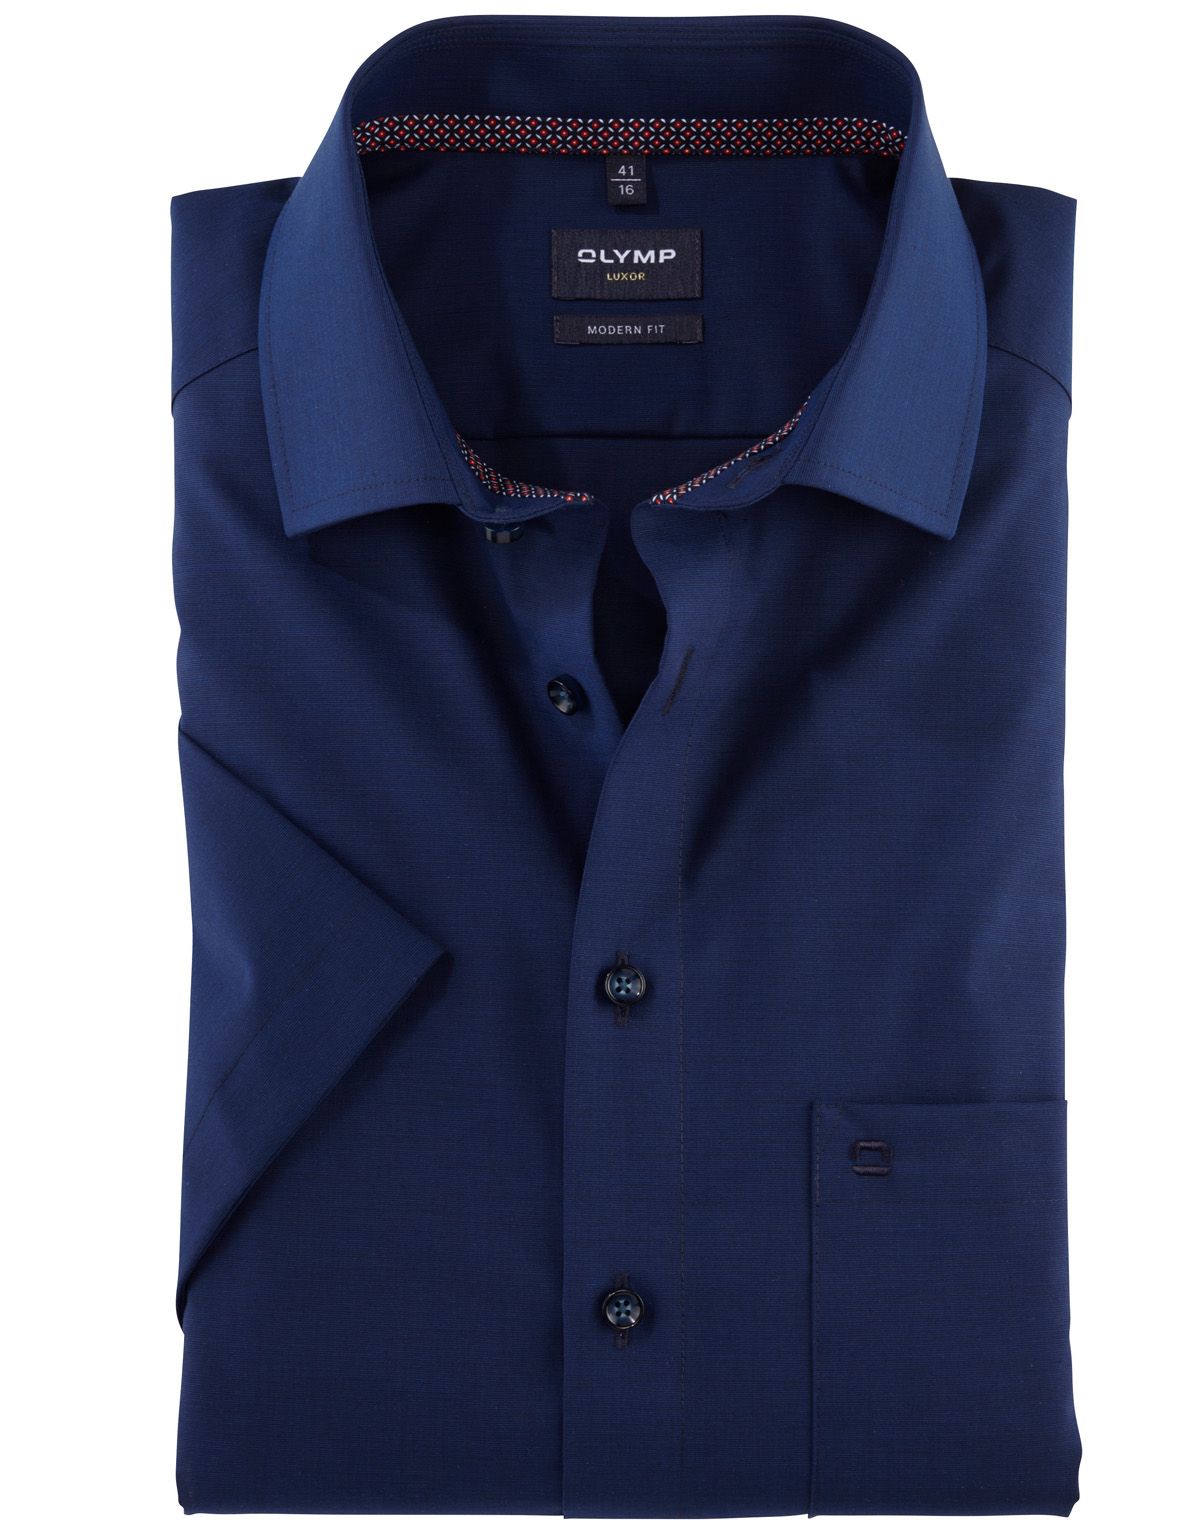 Рубашка классическая мужская OLYMP Luxor, modern fit[Синий]